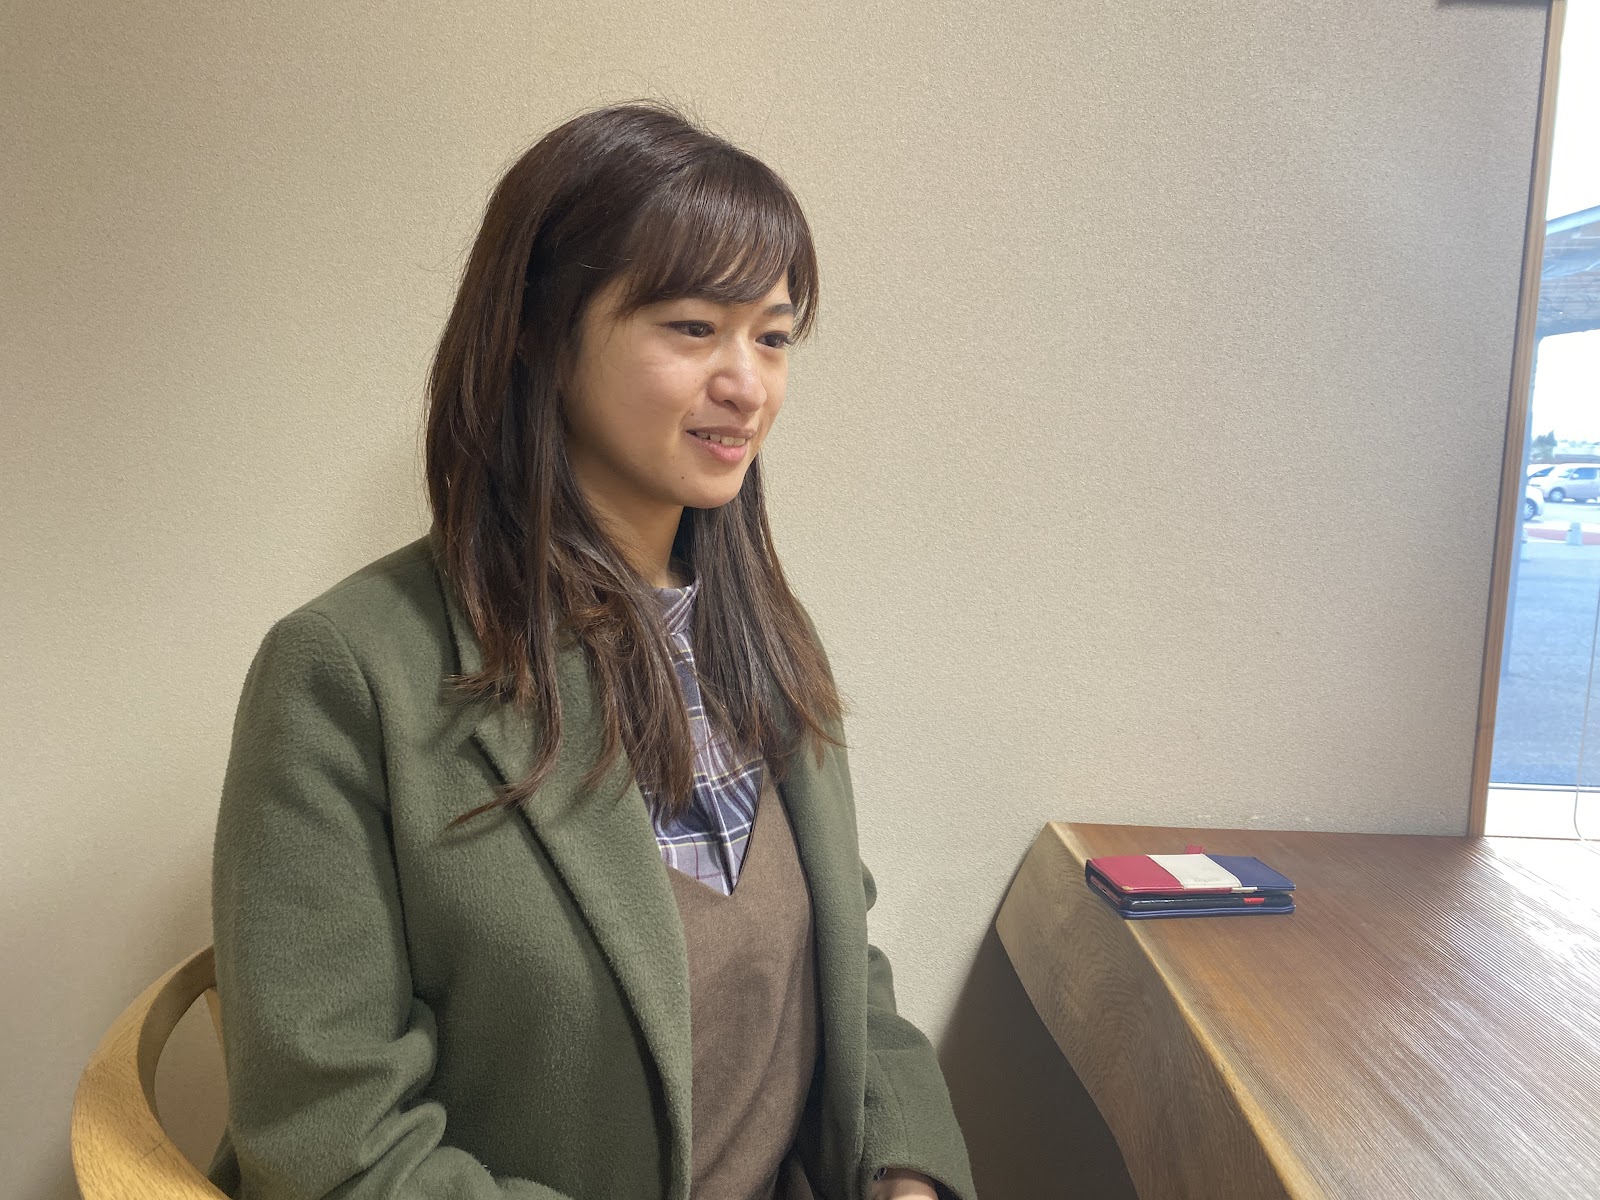 及川里美さんにインタビュー